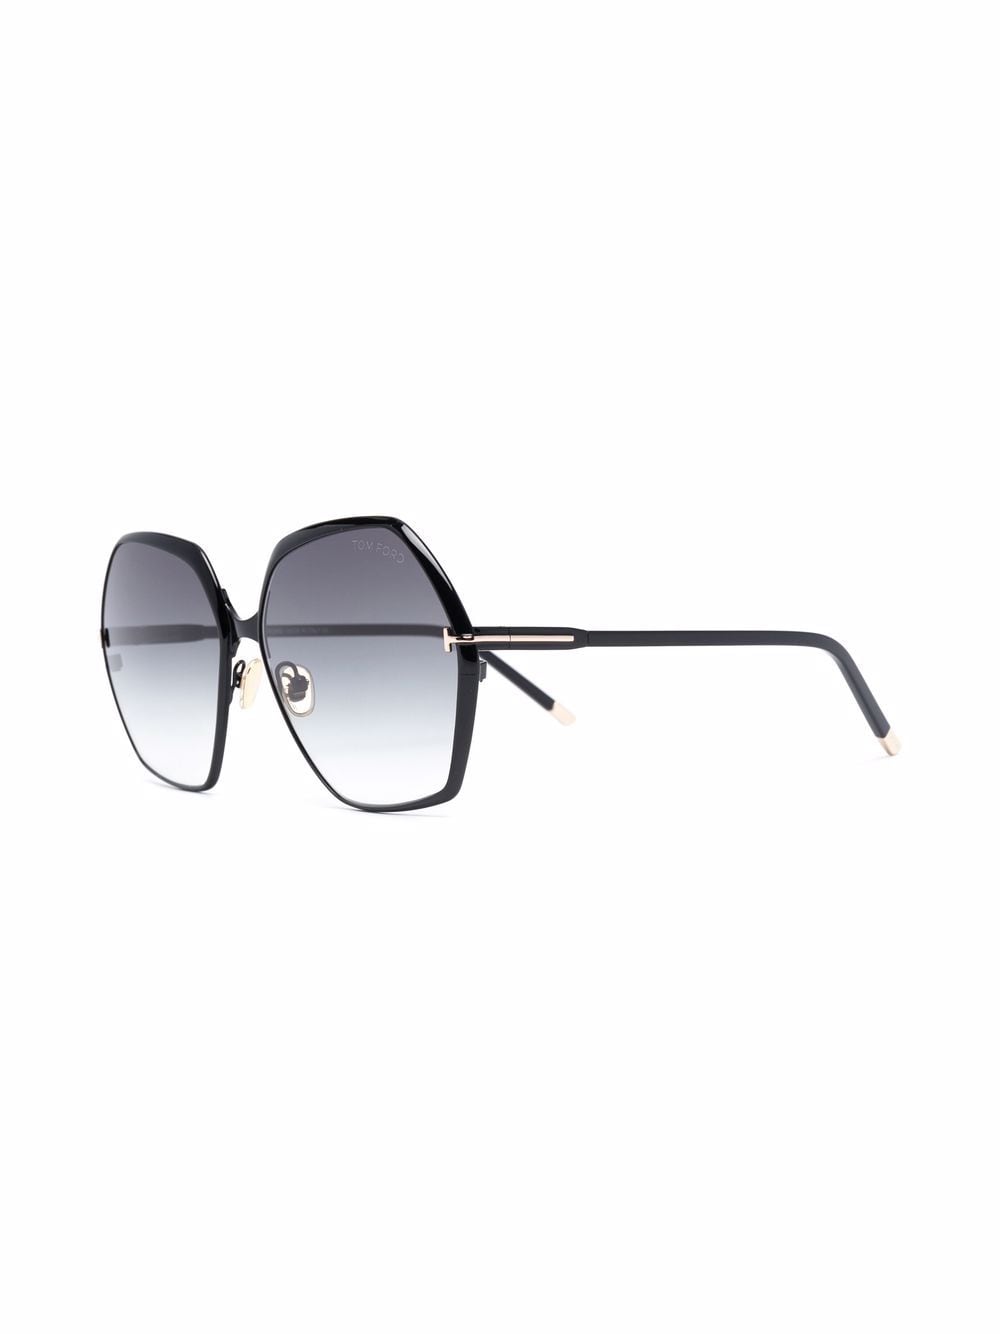 фото Tom ford eyewear солнцезащитные очки с градиентными линзами